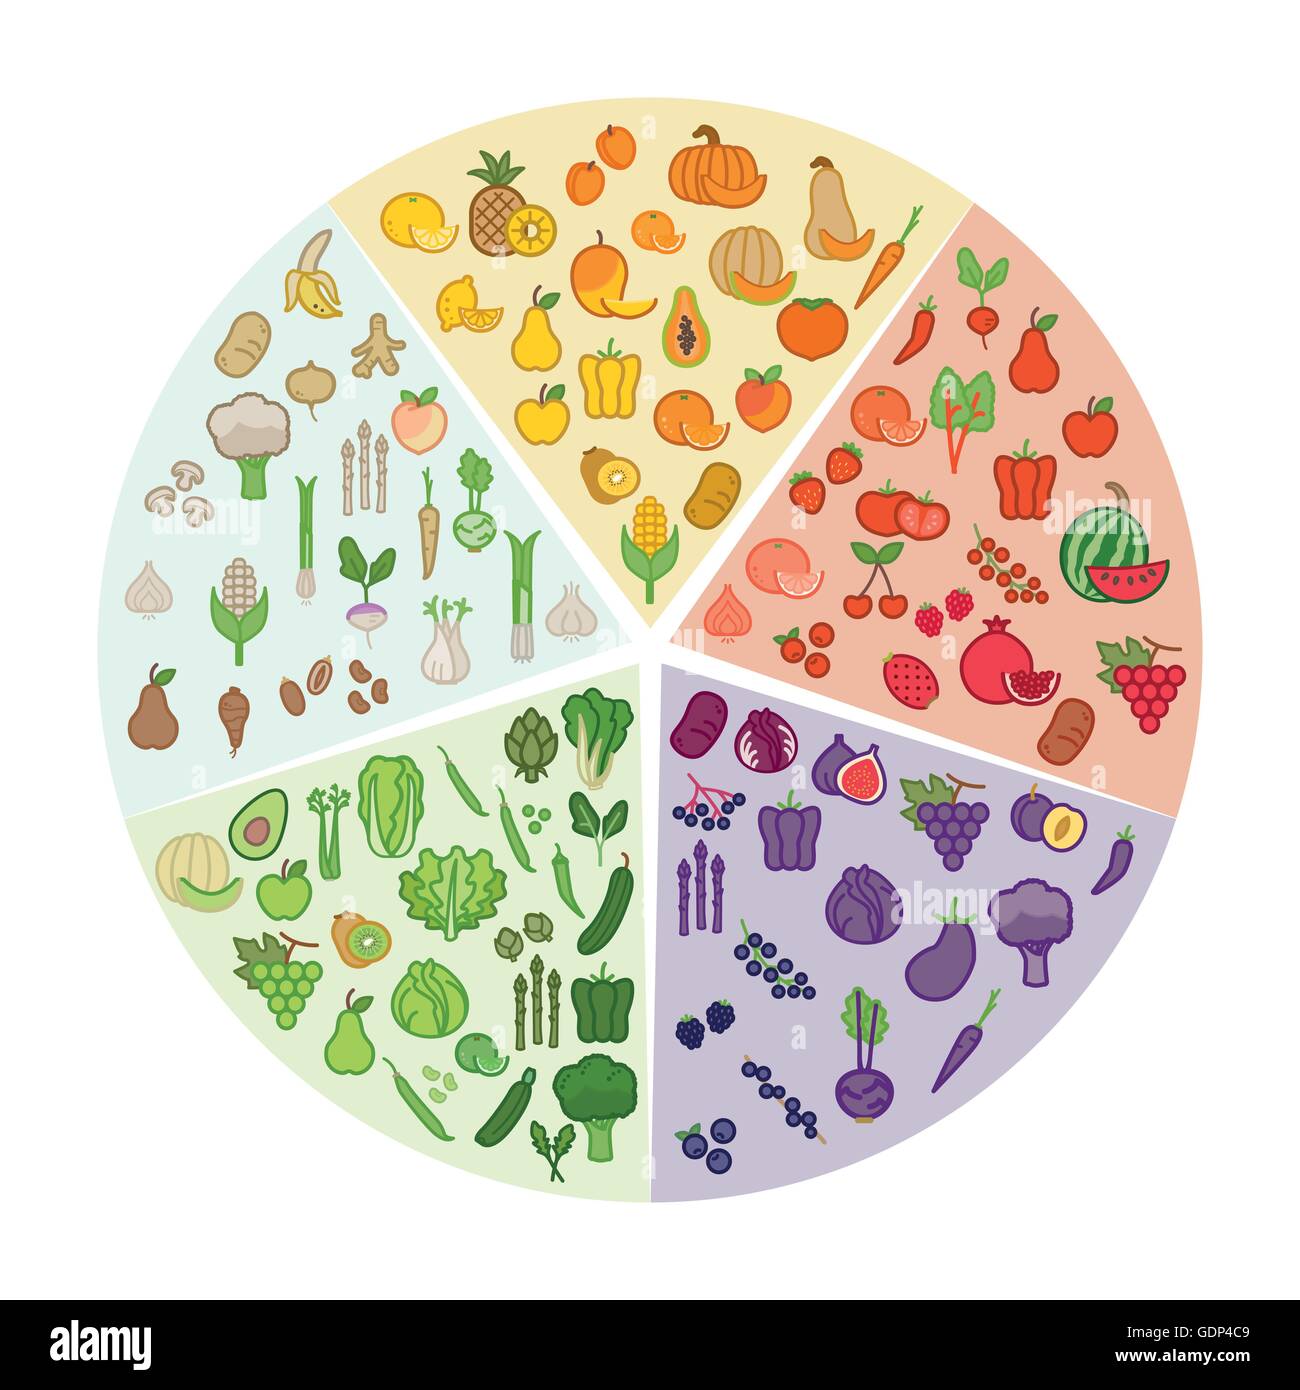 Obst und Gemüse Farbrad mit Farbe auf weißem Hintergrund, Diät und Ernährung-Konzept Stock Vektor